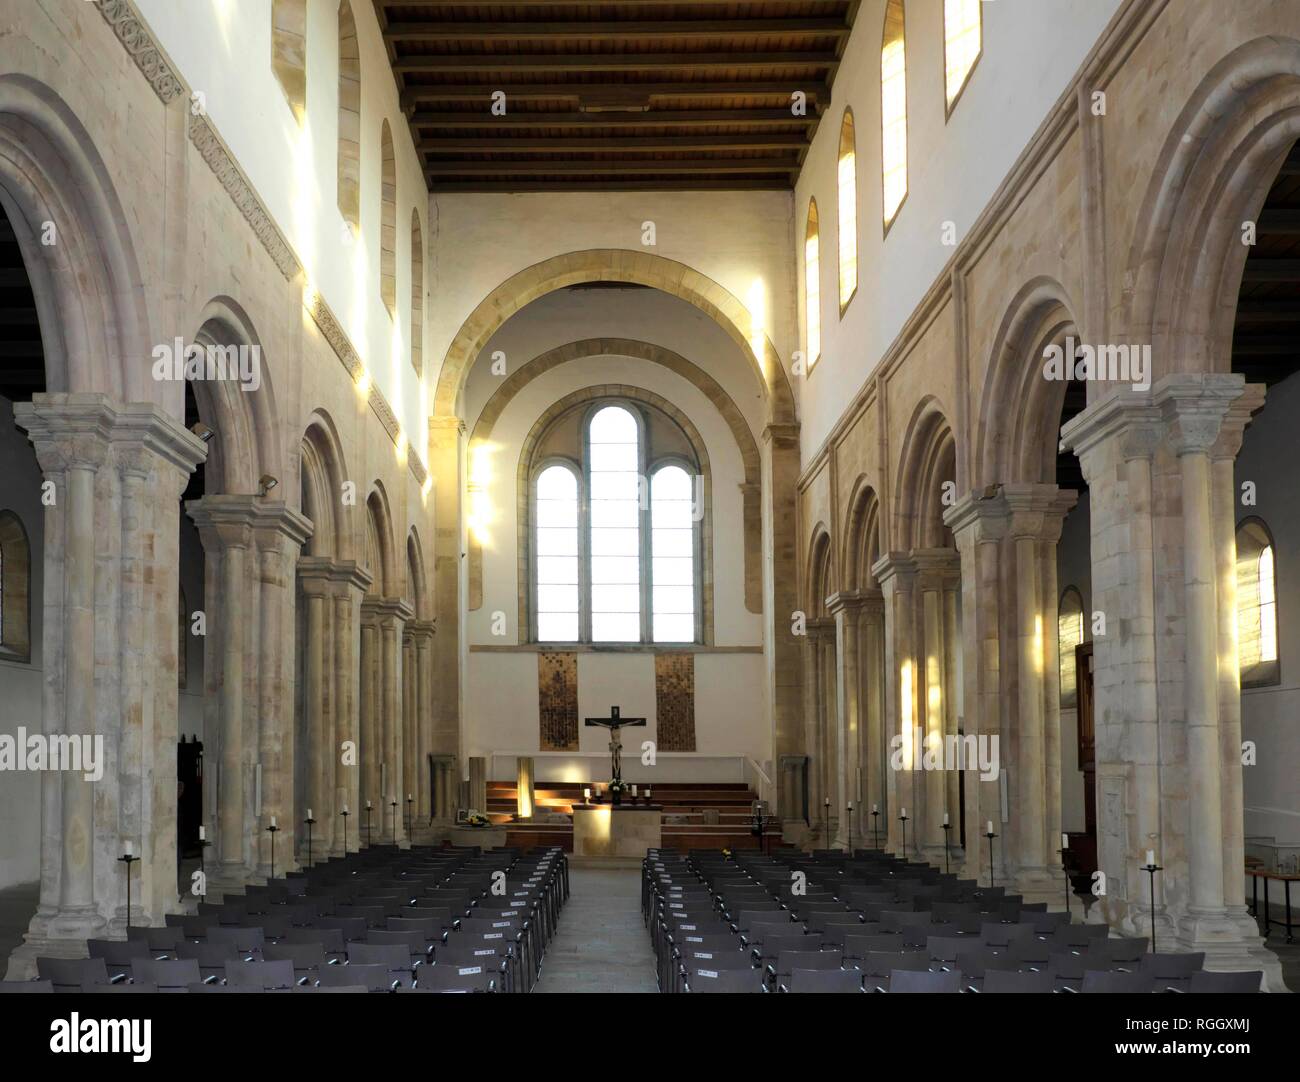 Monastero chiesa Thalbürgel, la chiesa romanica di Santa Maria e San Georg, Thalbürgel, comunità di Bürgel, Turingia, Germania Foto Stock